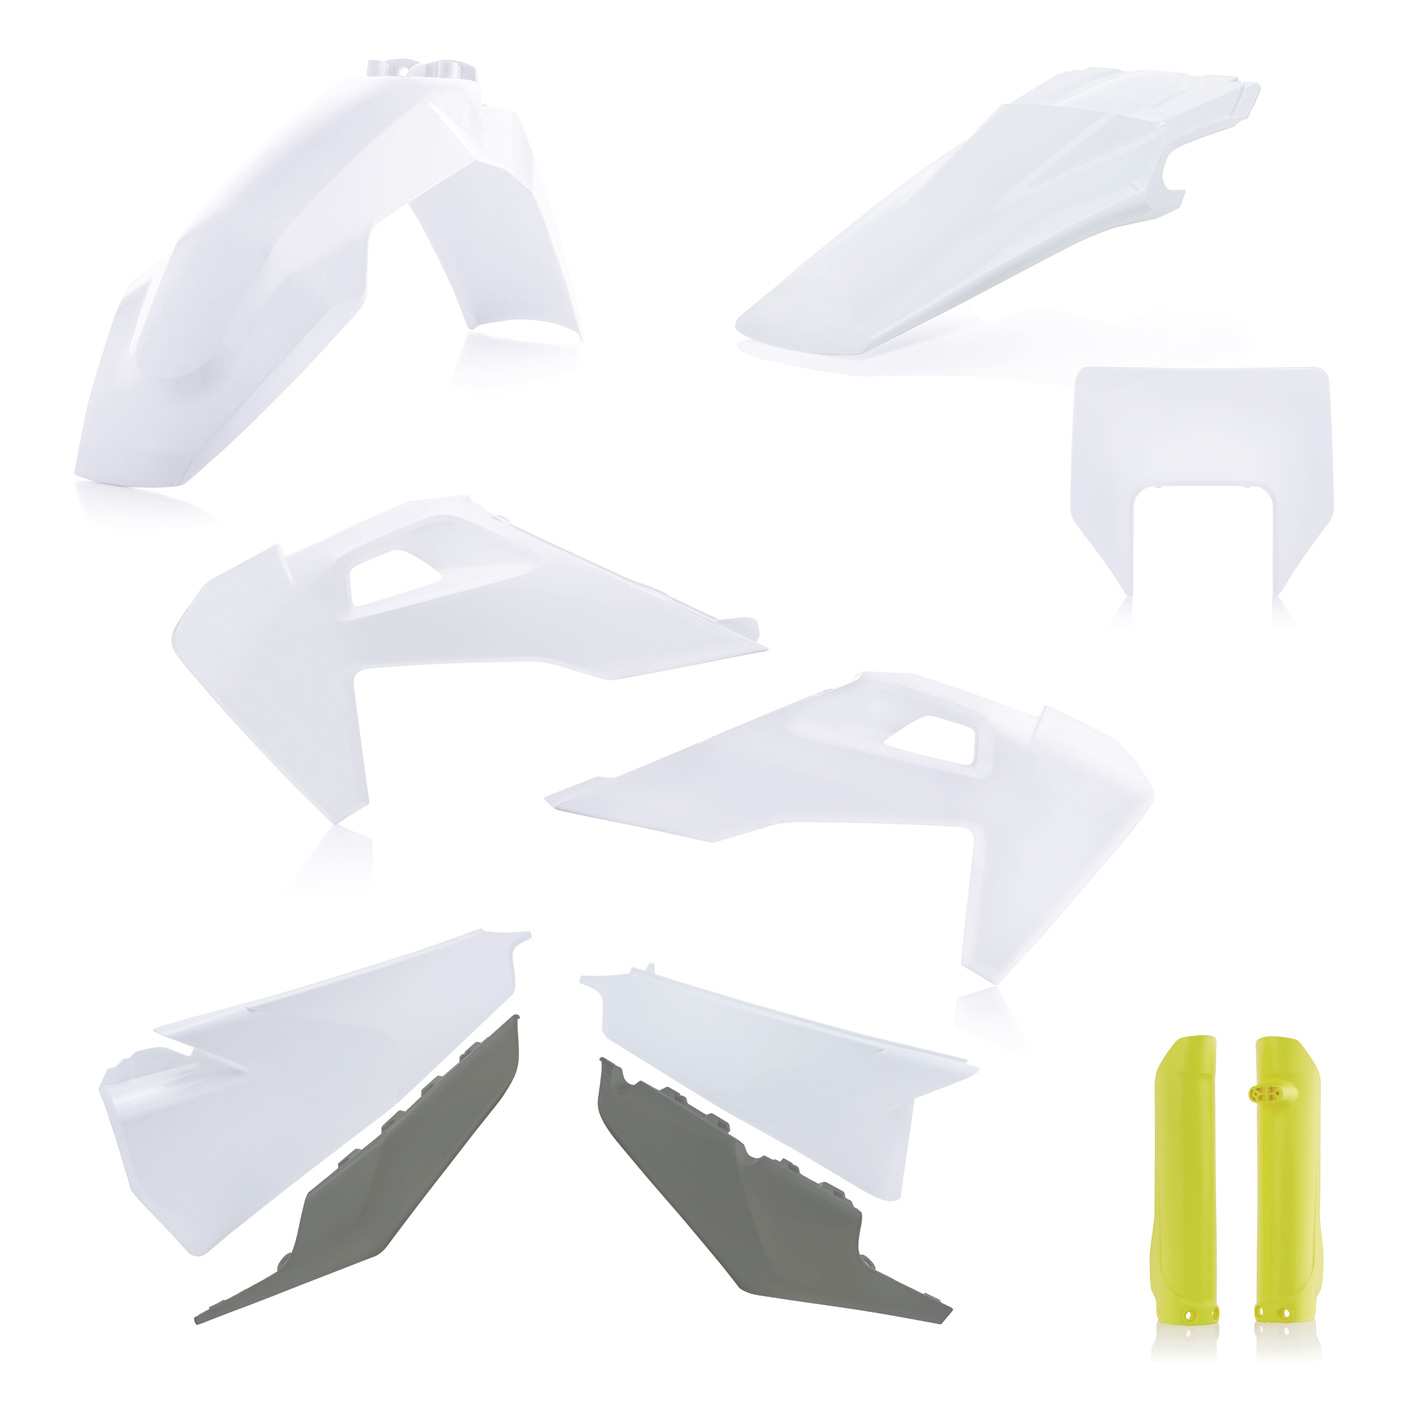 Plastikteile für deine Husqvarna FE und TE in OEM-Farben, bestehend aus Frontkotflügel, Heckkotflügel, Tankspoiler, Seitenteilen, Lampenmaske und Gabelschoner